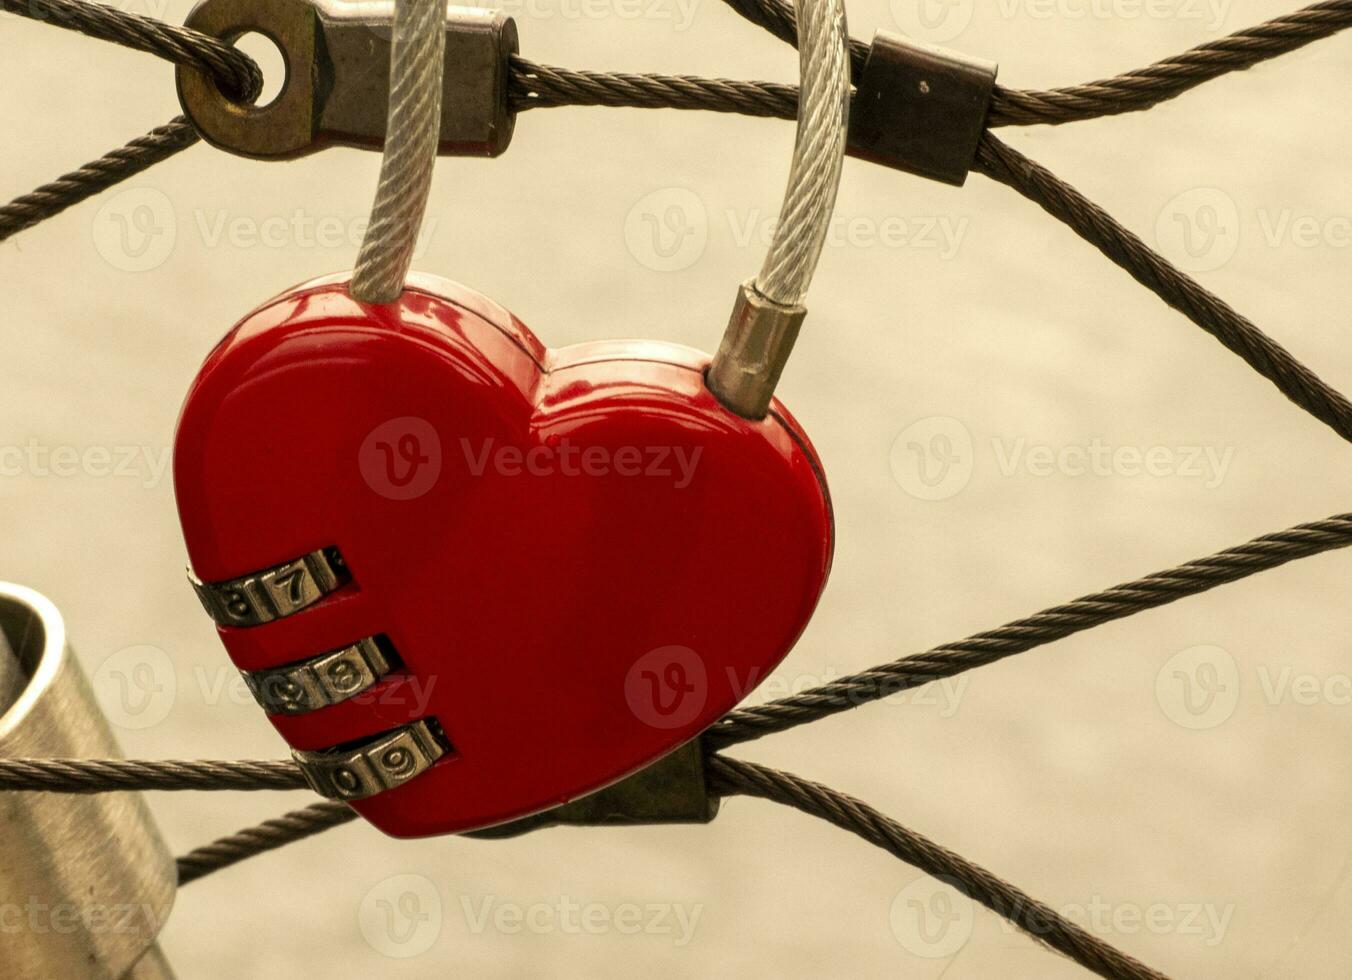 corazón bloquear a el puente, rojo corazón bloquear con un código, amor y pasión foto. un contraseña desde mi corazón concepto foto